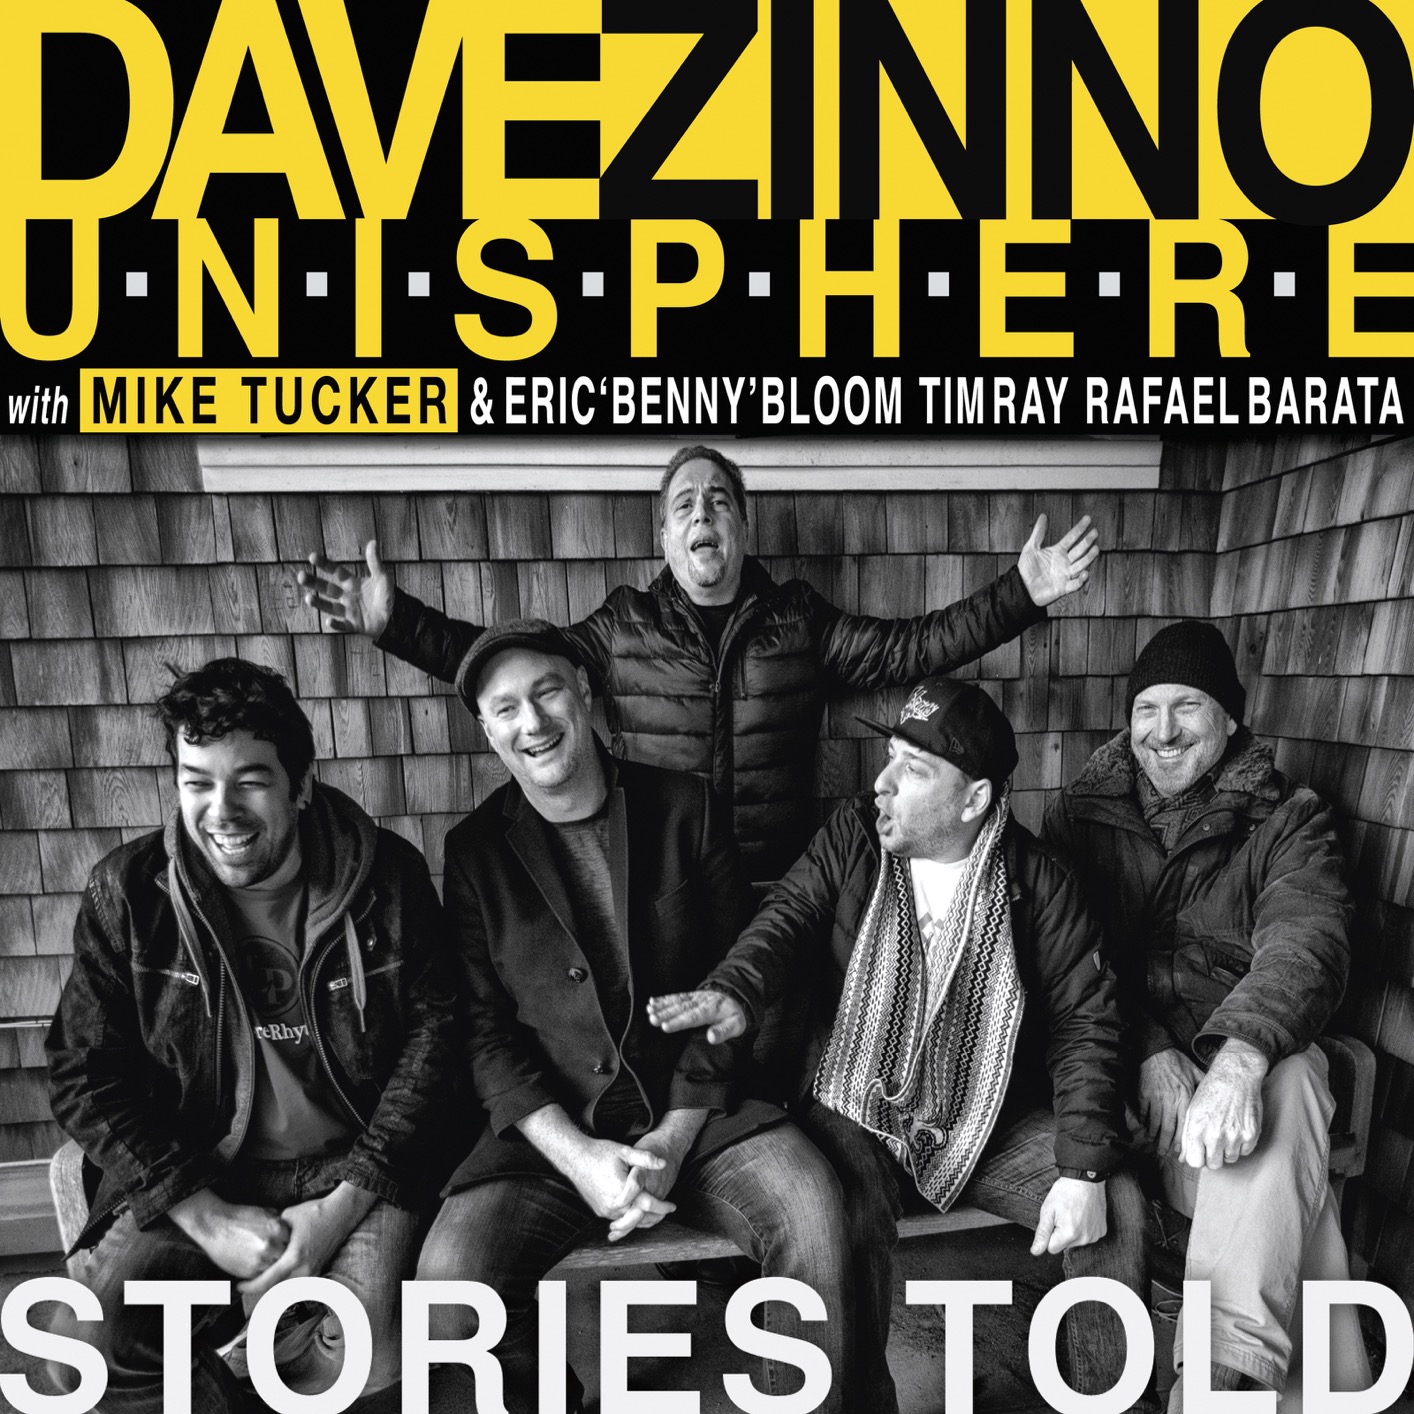 Dave Zinno Unisphere – Stories Told (2019) [FLAC 24bit/44,1kHz]